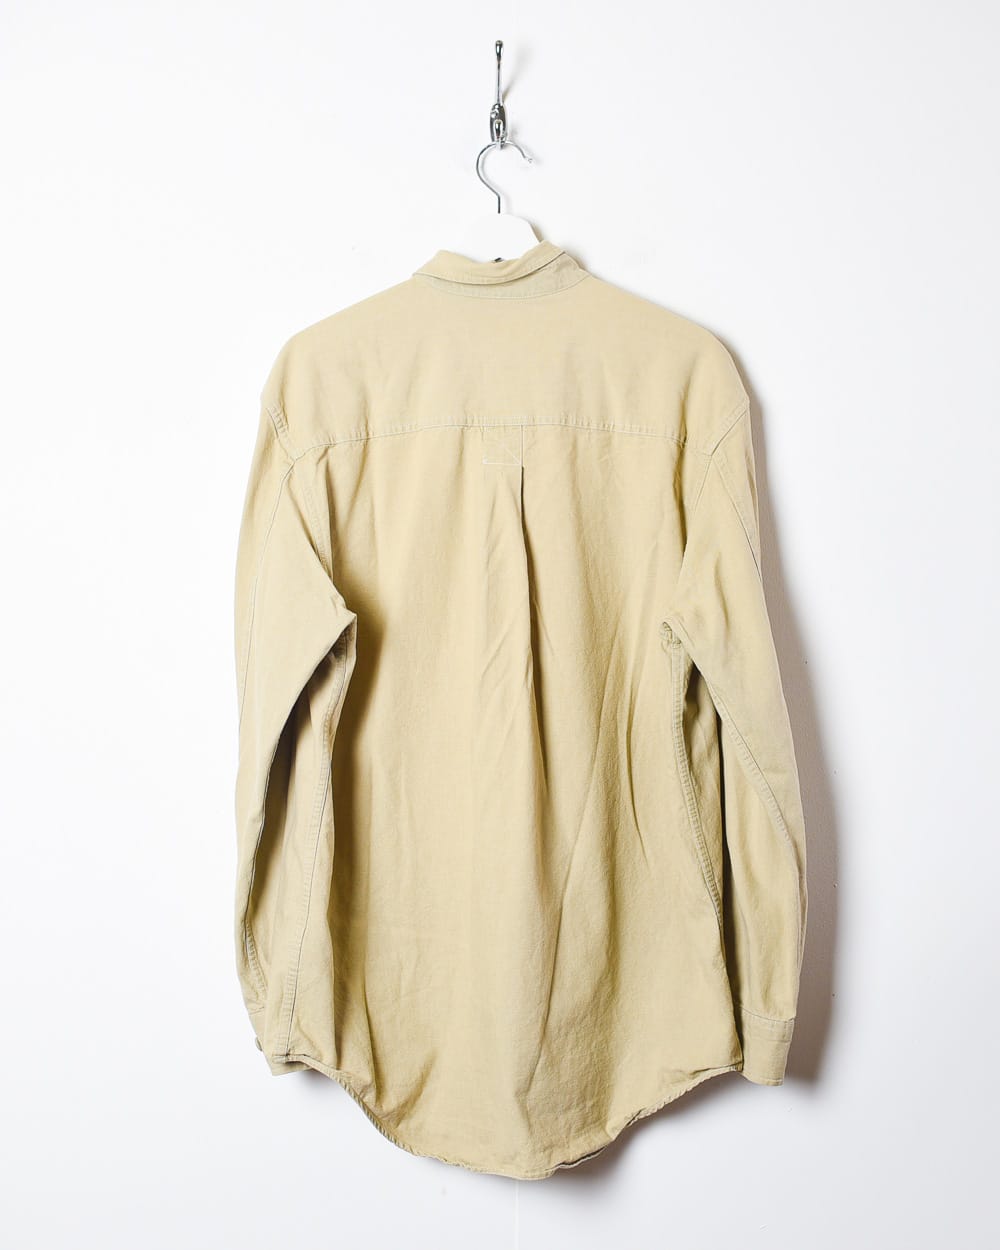 Neutral Timberland Shirt - Medium